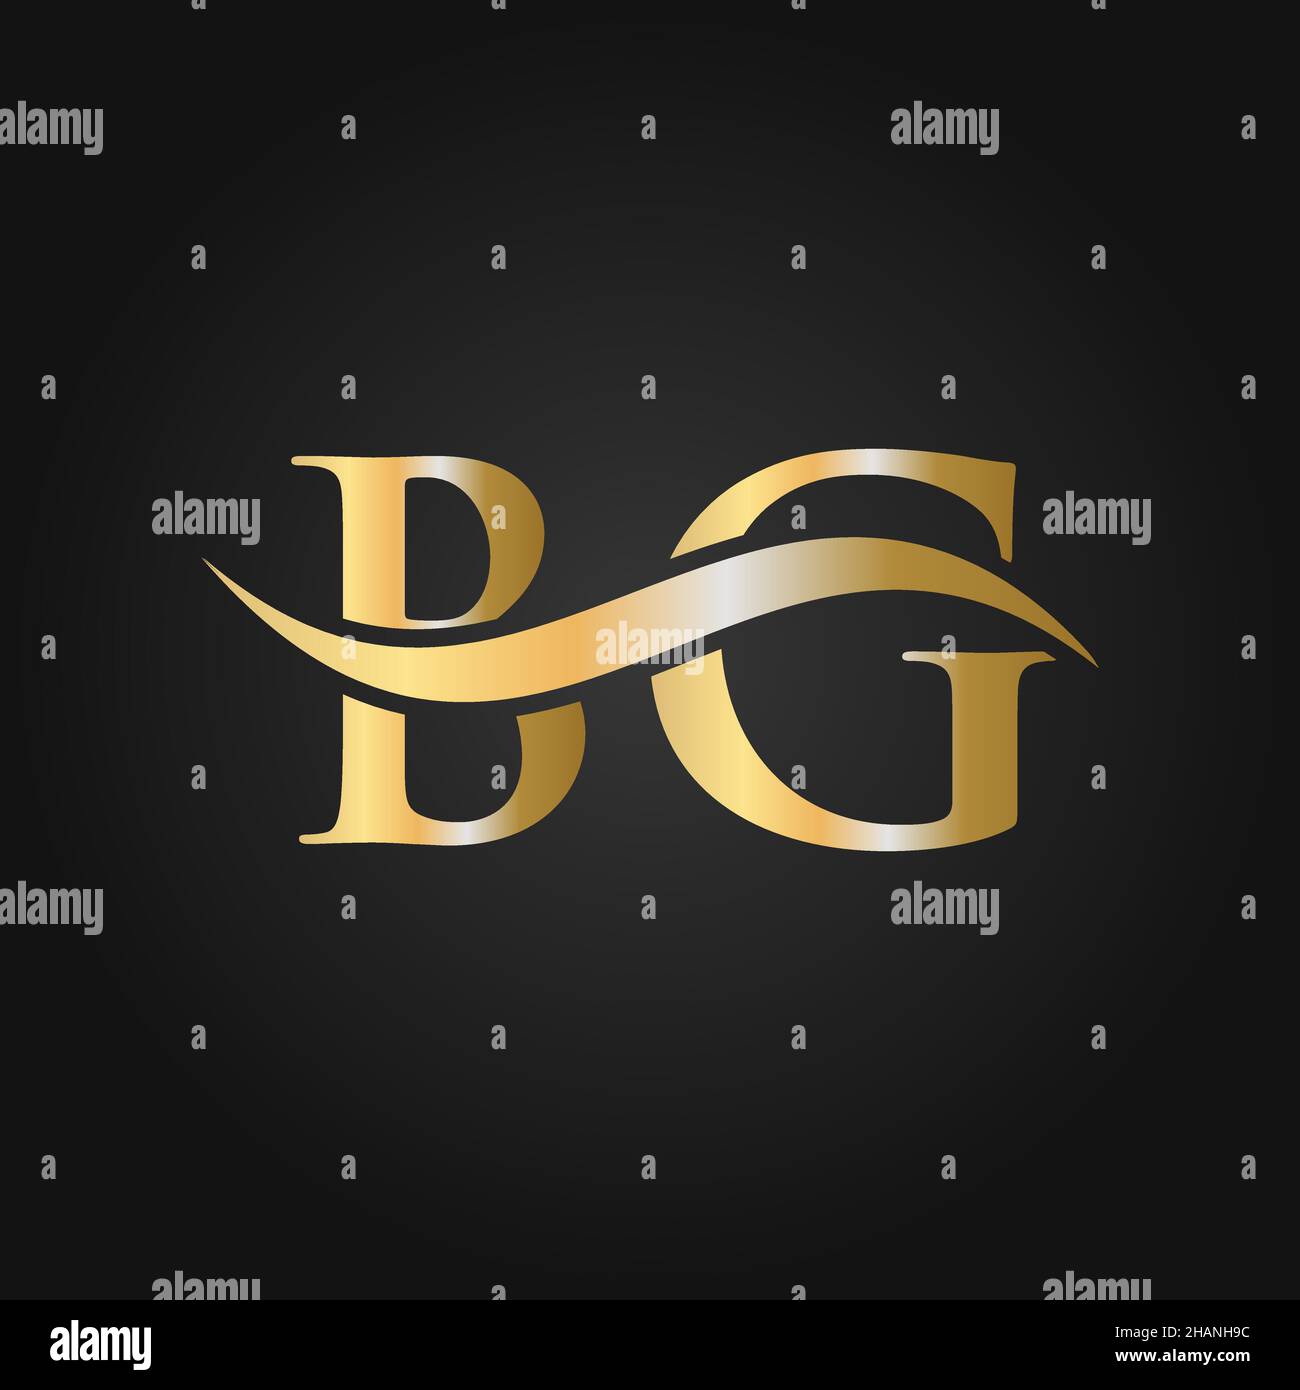 Letter BG Logo Sign Design Template. BG, B G Letter Logo Modern, Flat, Minimalist, Business, Company Template Stock Vector